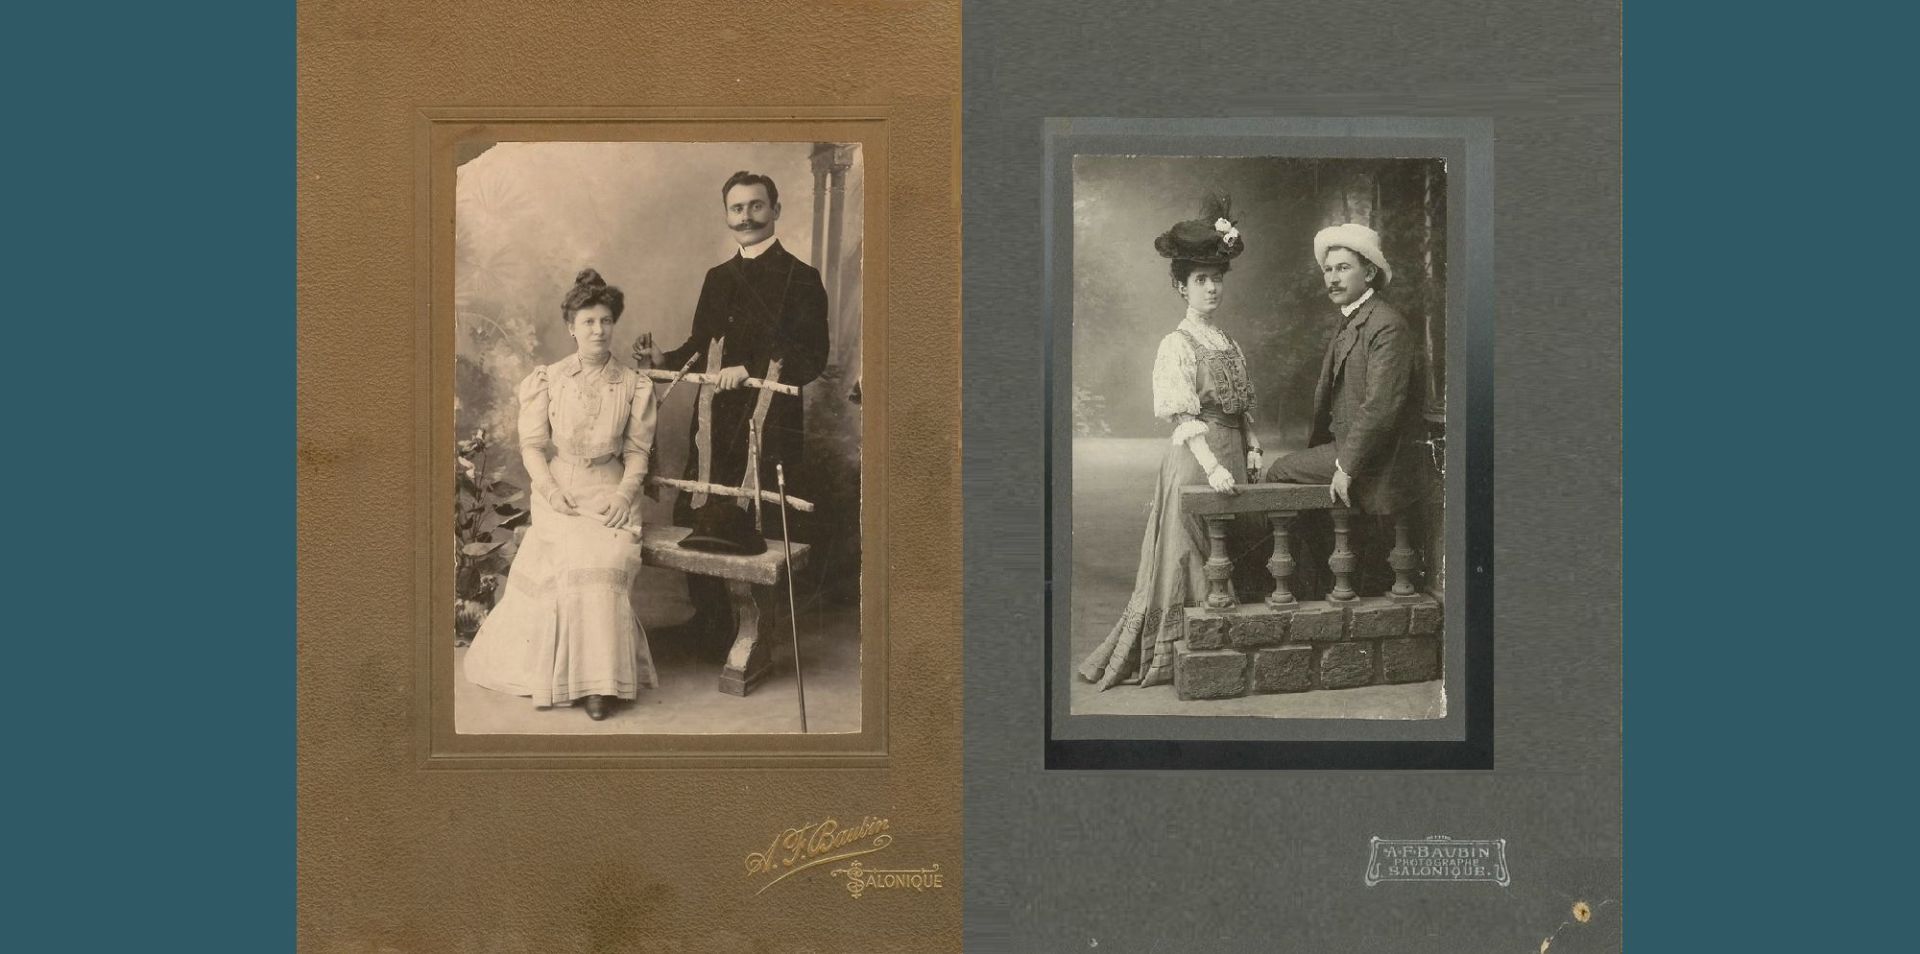 Τα εικονιζόμενα δύο ζευγάρια παντρεύτηκαν το ίδιο έτος, το 1906.